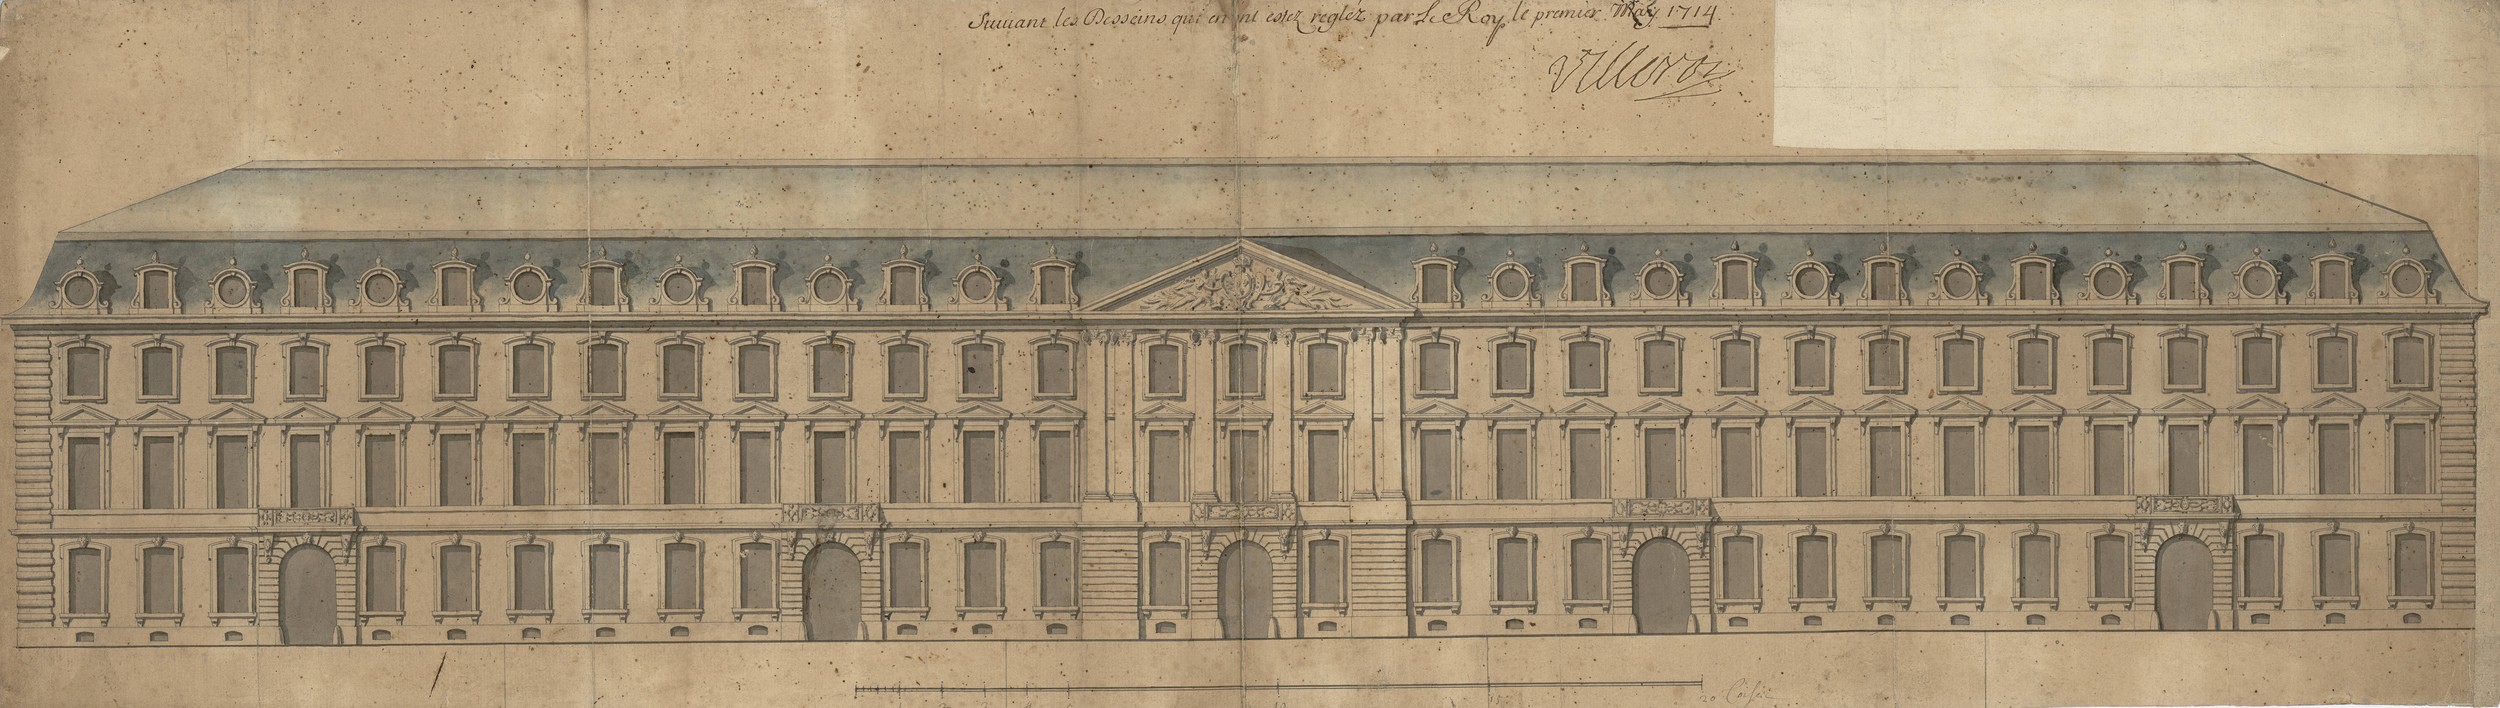 Elévation des façades des deux bouts de la place de Louis le Grand [Bellecour]: dessin manuscrit par de Cotte (1714, cote : 2S/292)